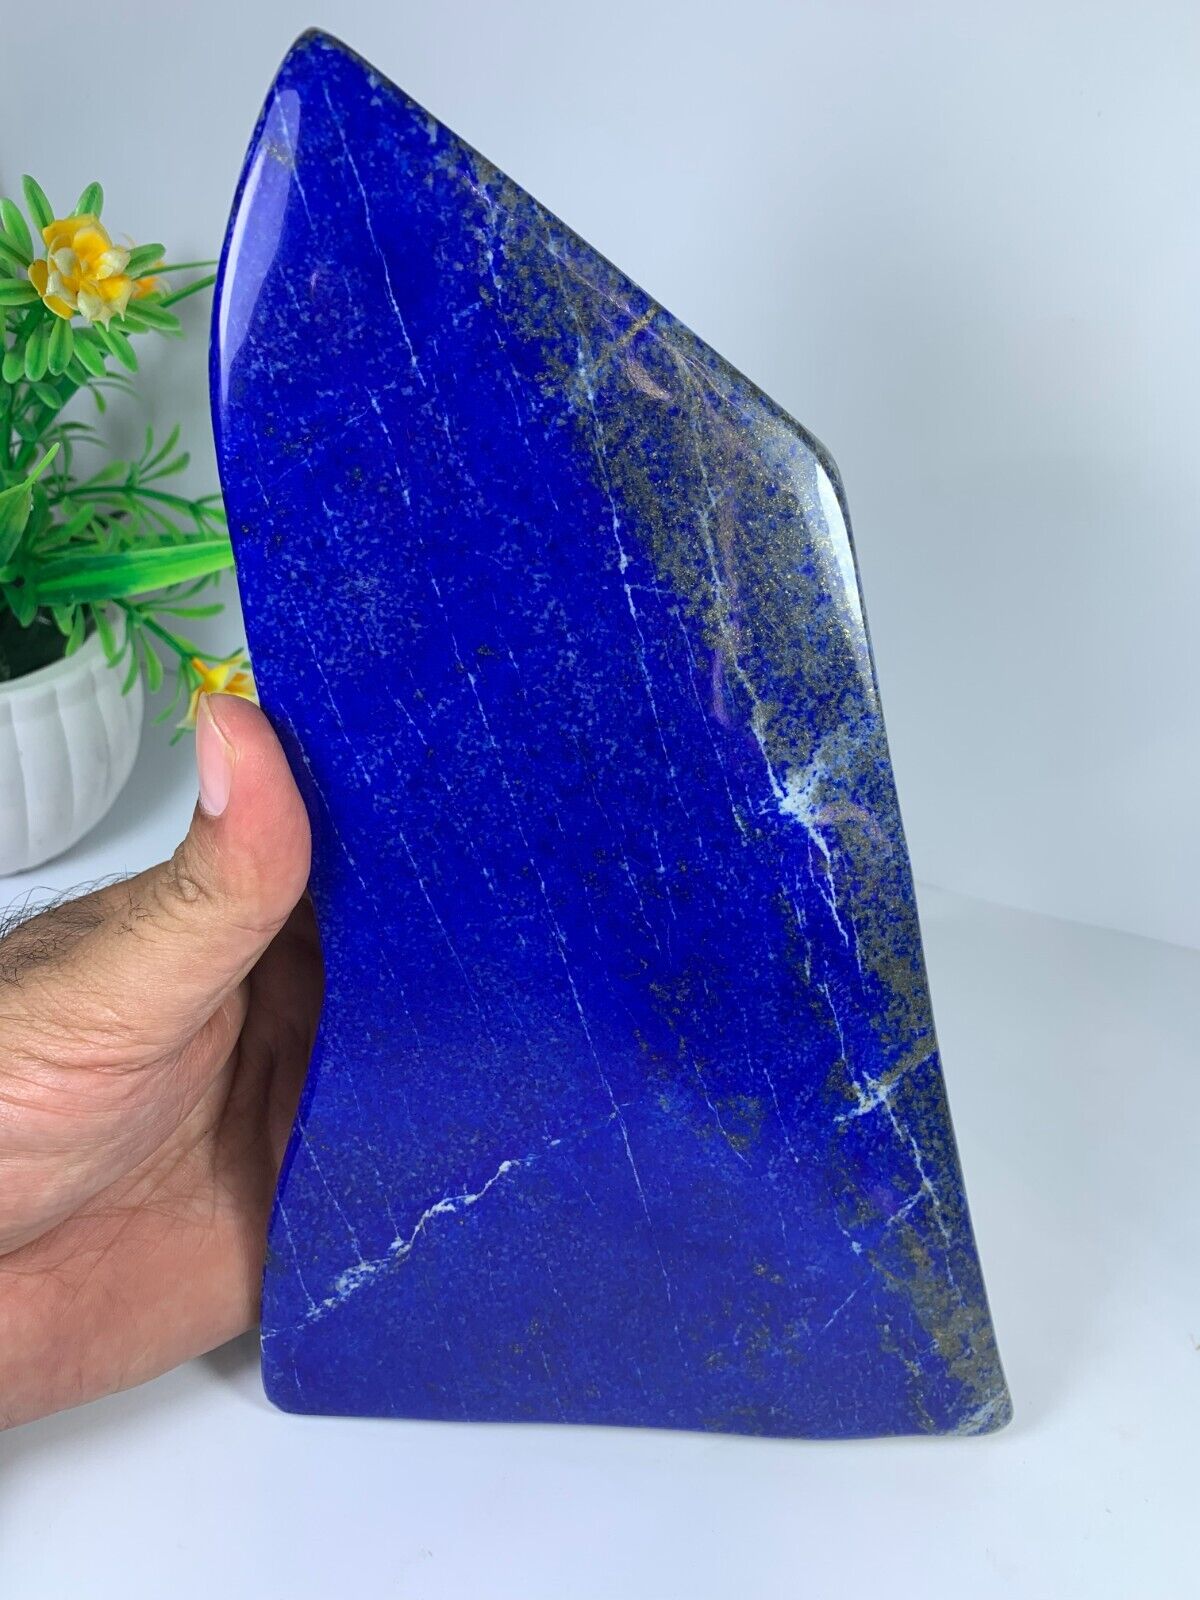 1.3kg ONESIDE Lapis Lazuli Freeform Polished Rough Tumble Crystal Specimen Stone